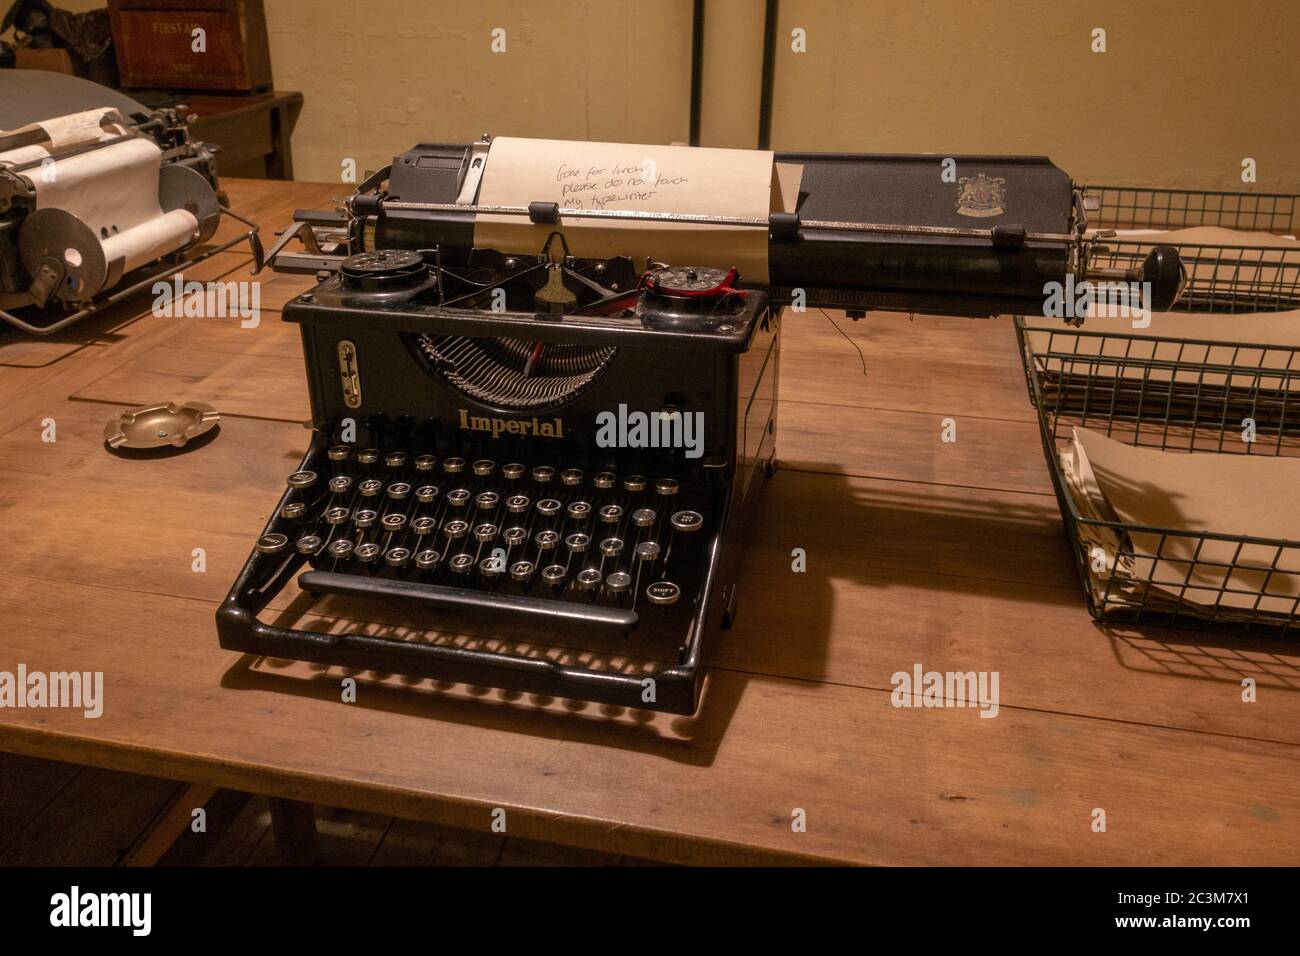 Machine à écrire impériale dans la salle de téléimprimeur de Hut 3 à Bletchley Park, Bletchley. Buckinghamshire, Royaume-Uni. (Fév 2020) Banque D'Images